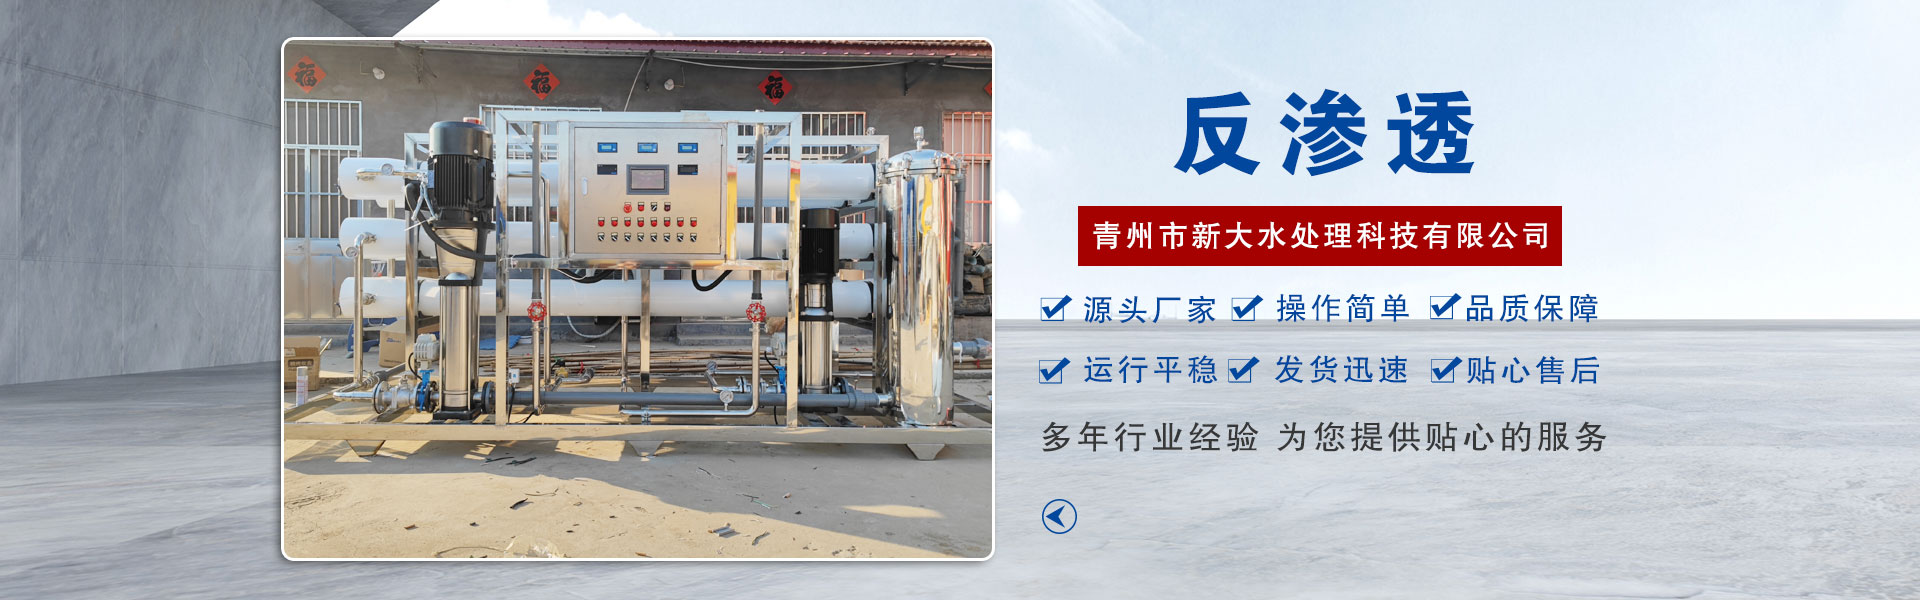 青州市新大水处理科技有限公司